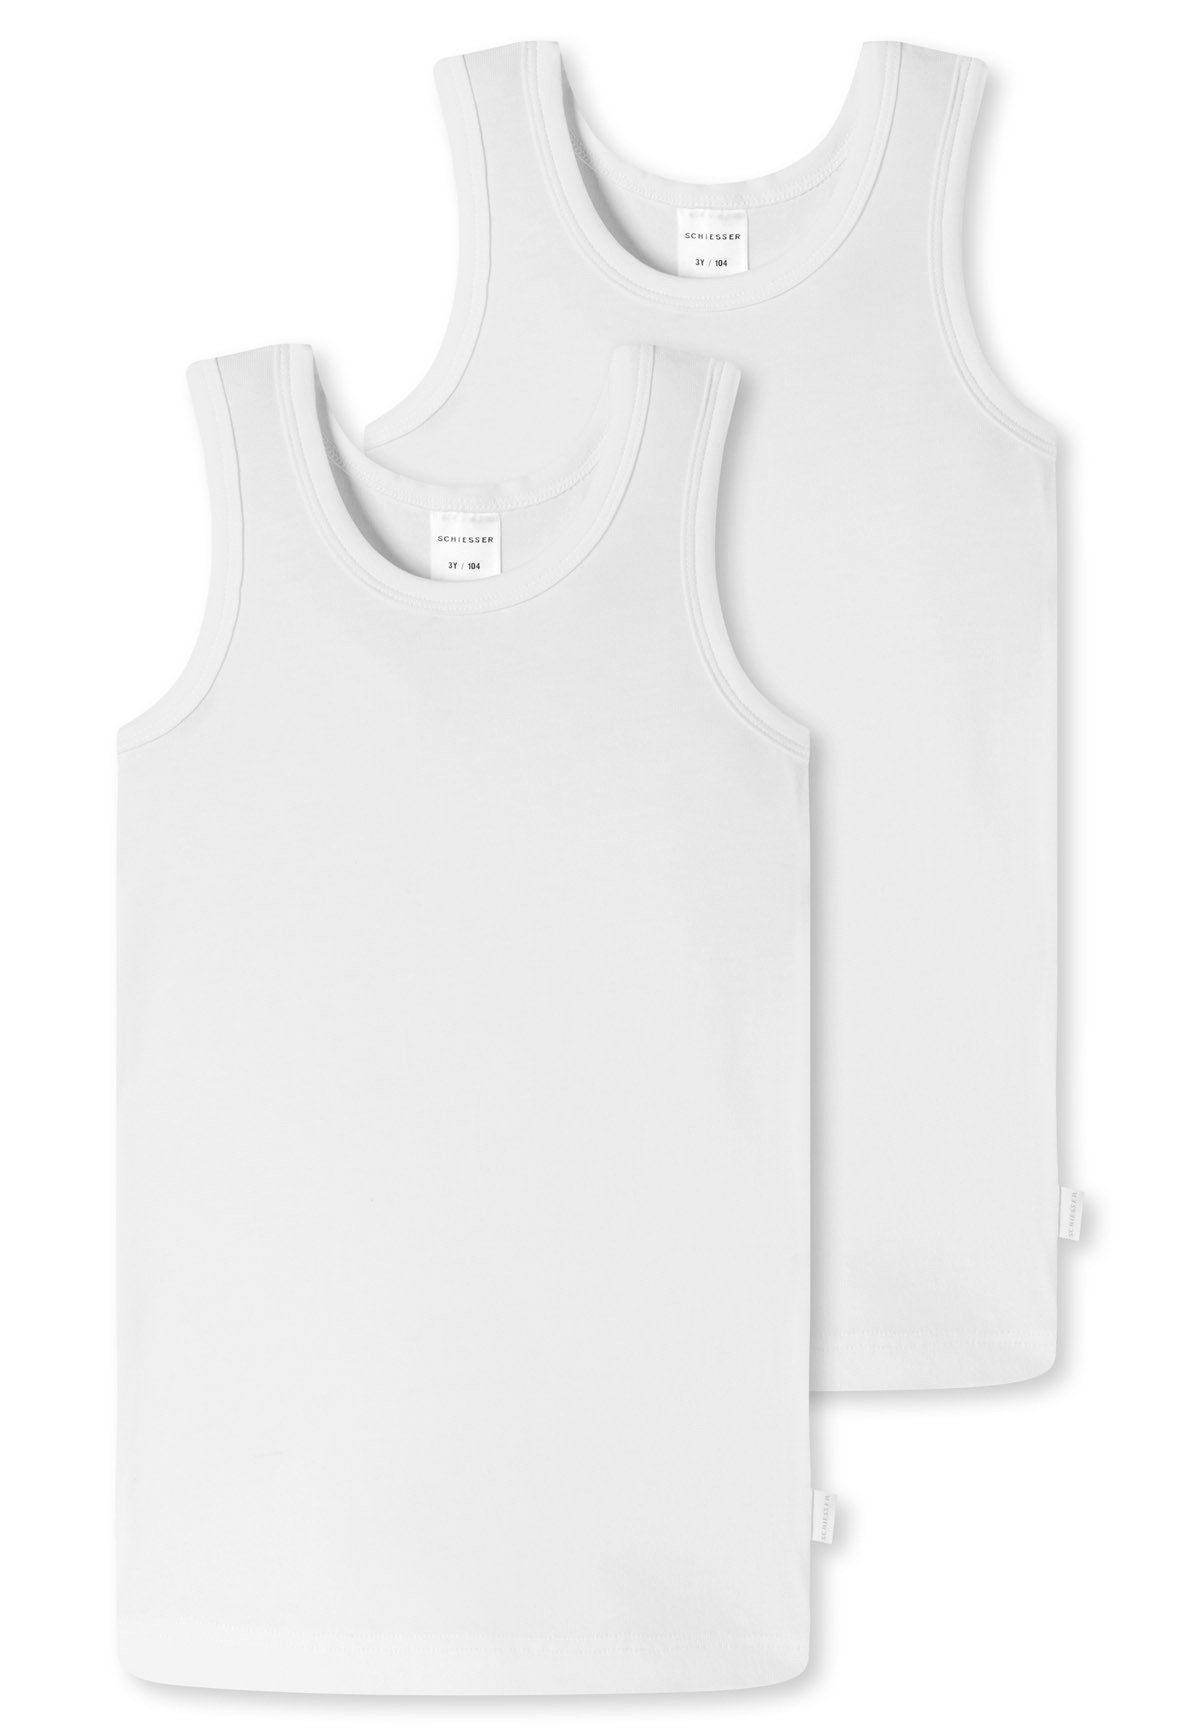 Schiesser Unterhemd Jungen Unterhemd Cotton - Organic Pack 2er Weiß